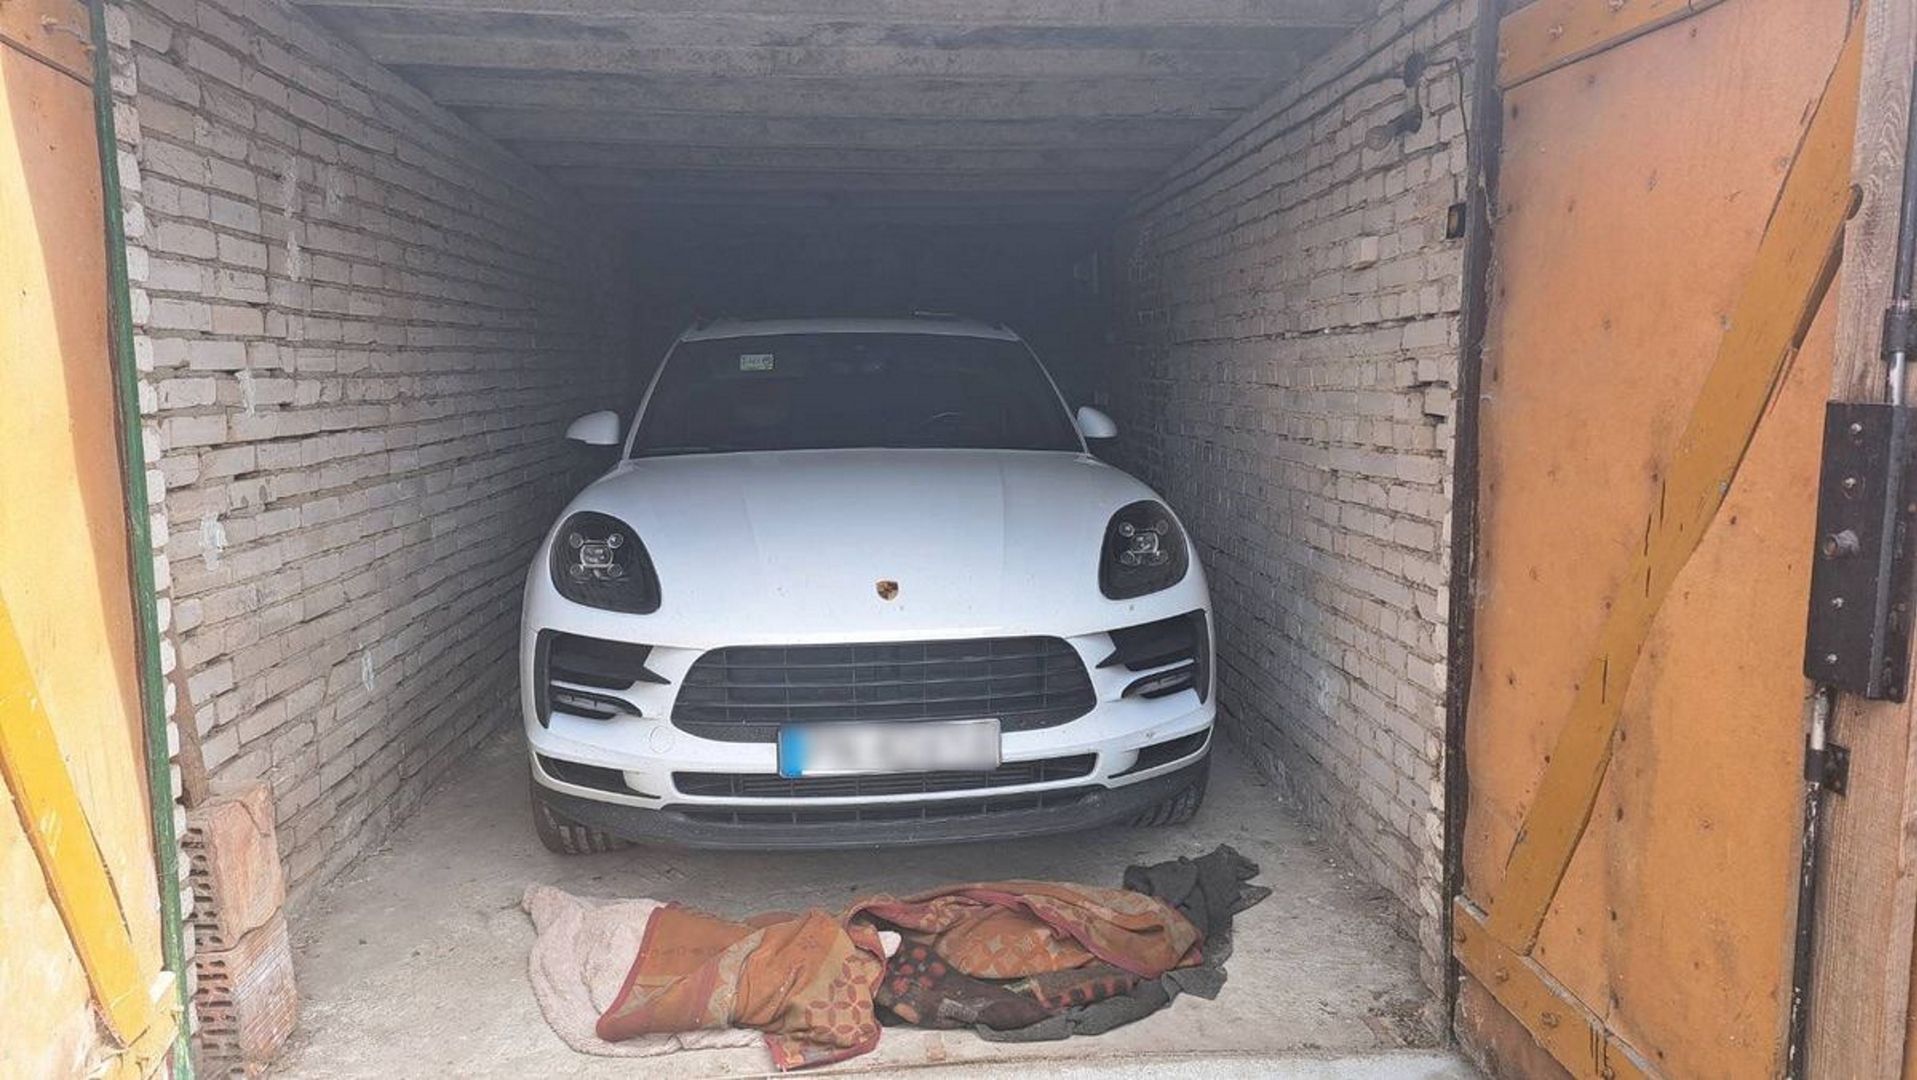 Sprawdzili garaż na terenie Człuchowa. Sprawcy ukryli Porsche pod kocami